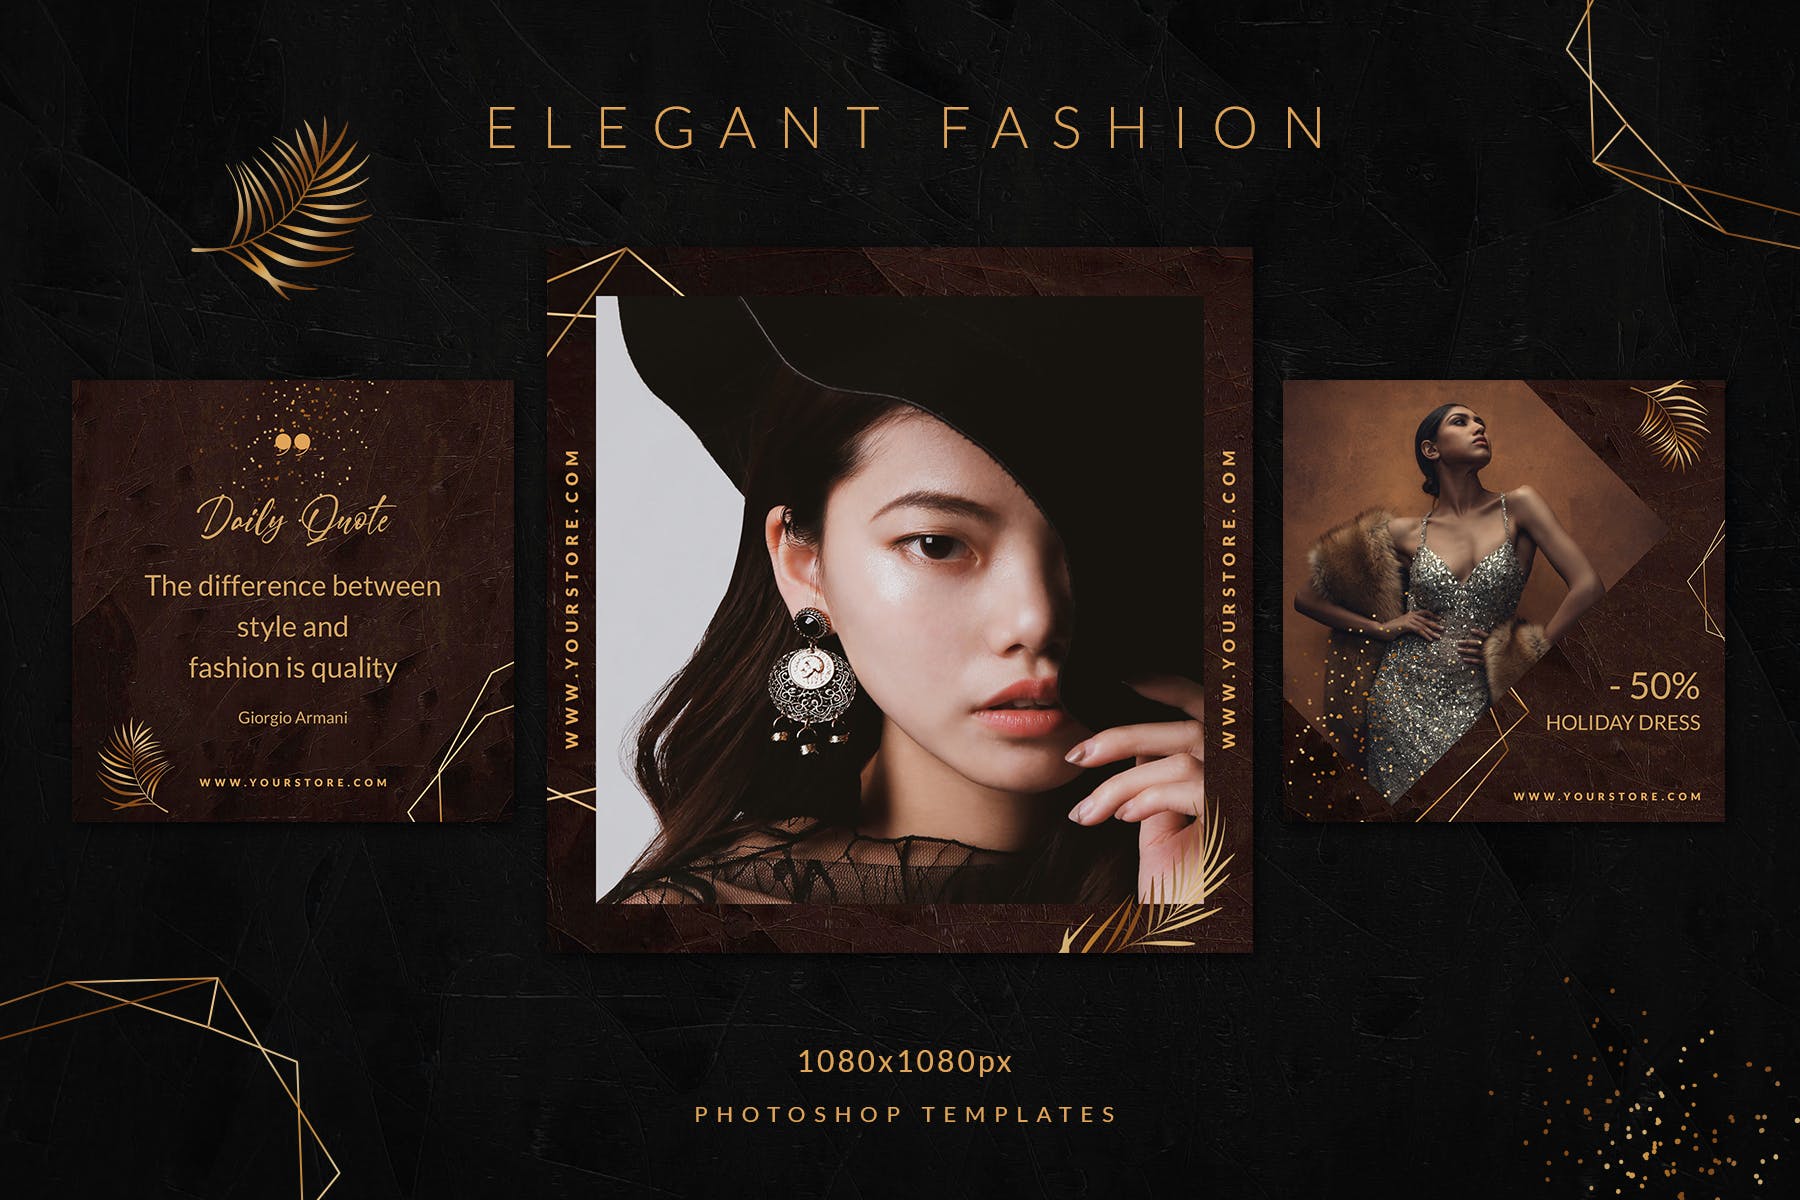 时尚优雅女性服装营销新媒体电商海报psd模板elegantfashioninstagram